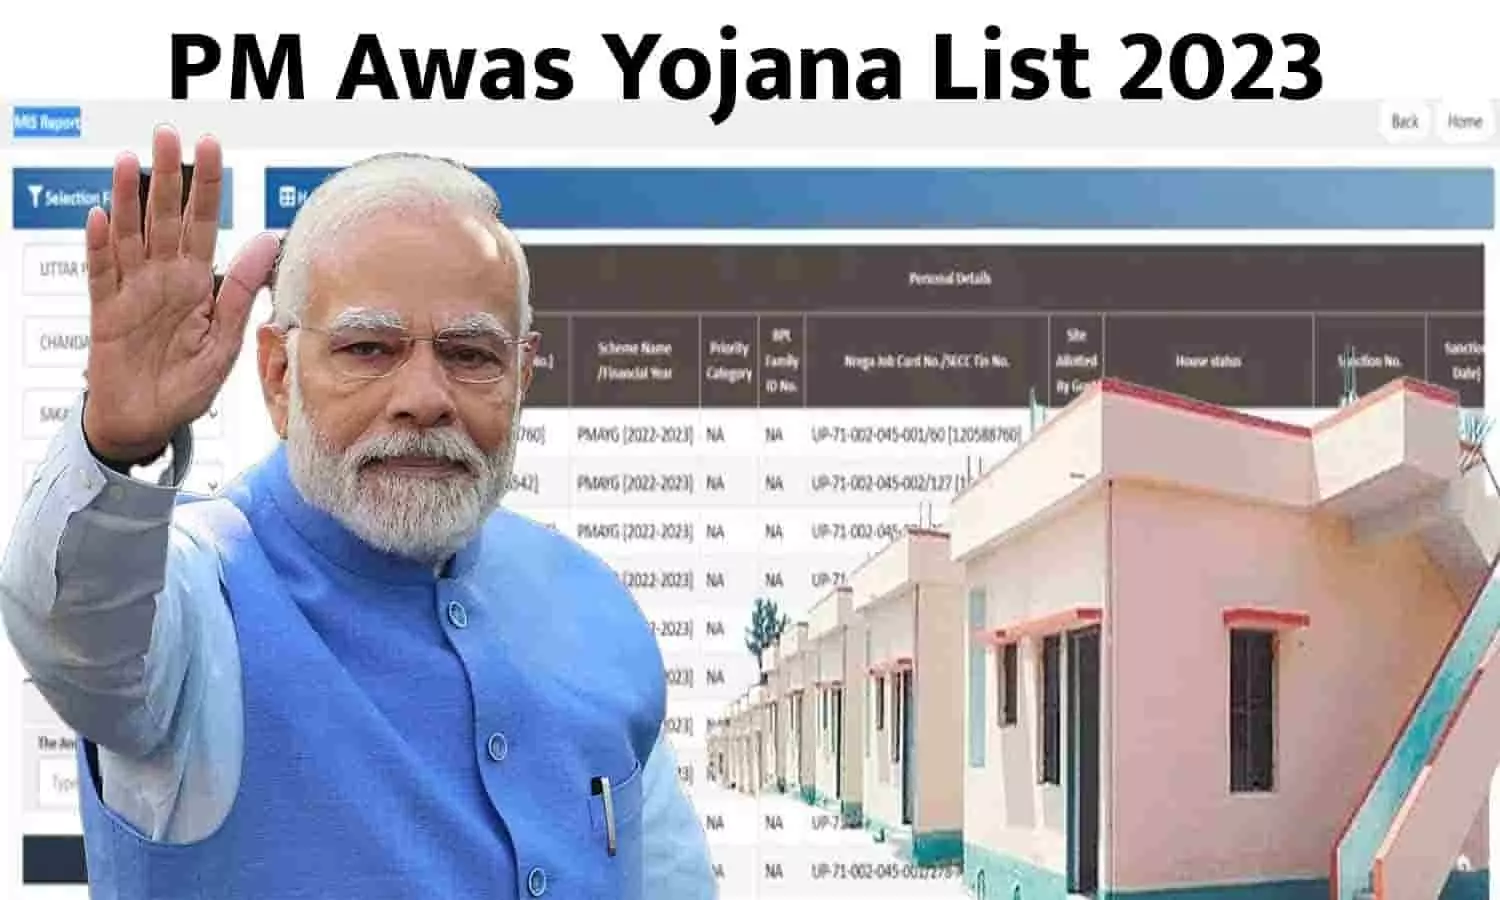 PM Awas Yojana List 2023: जारी हुई पीएम आवास योजना की लिस्ट, 8 लाख लोगों को मिलेगा उनका अपना घर, ऐसे देखे लिस्ट